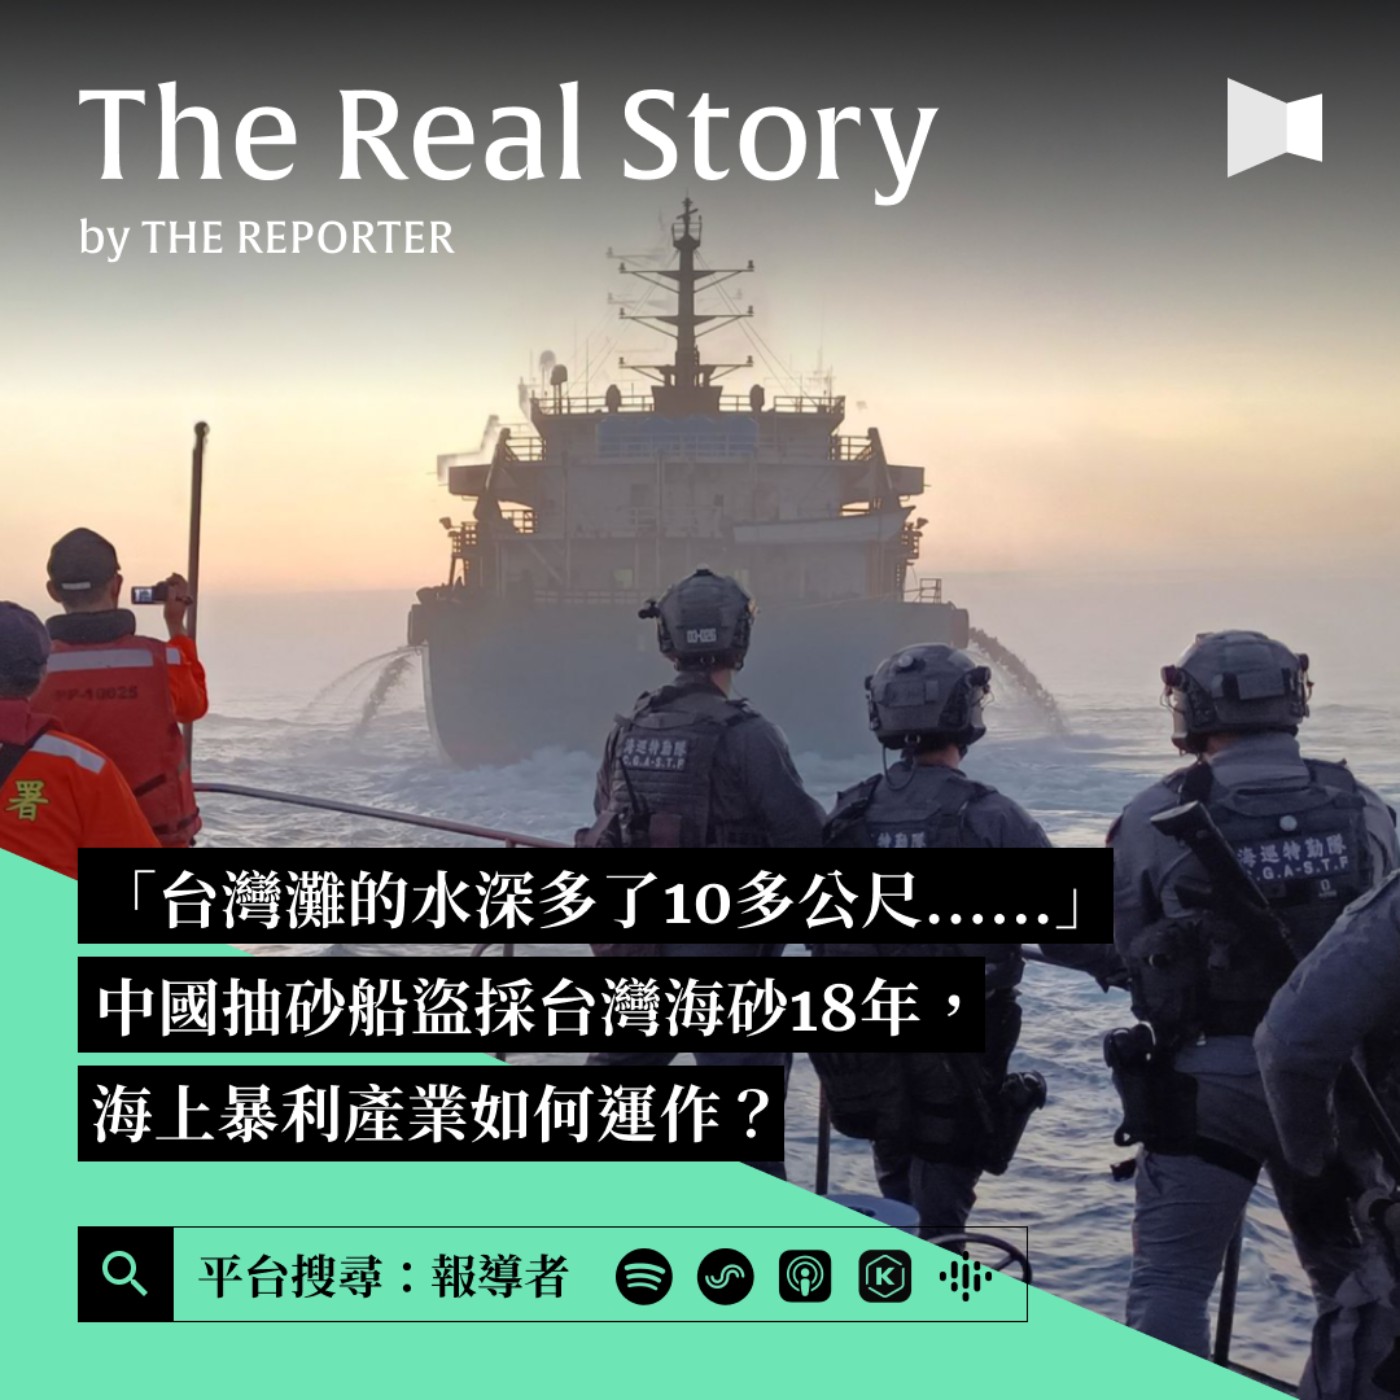 「台灣灘的水深多了10多公尺......」中國抽砂船盜採台灣海砂18年，海上暴利產業如何運作？